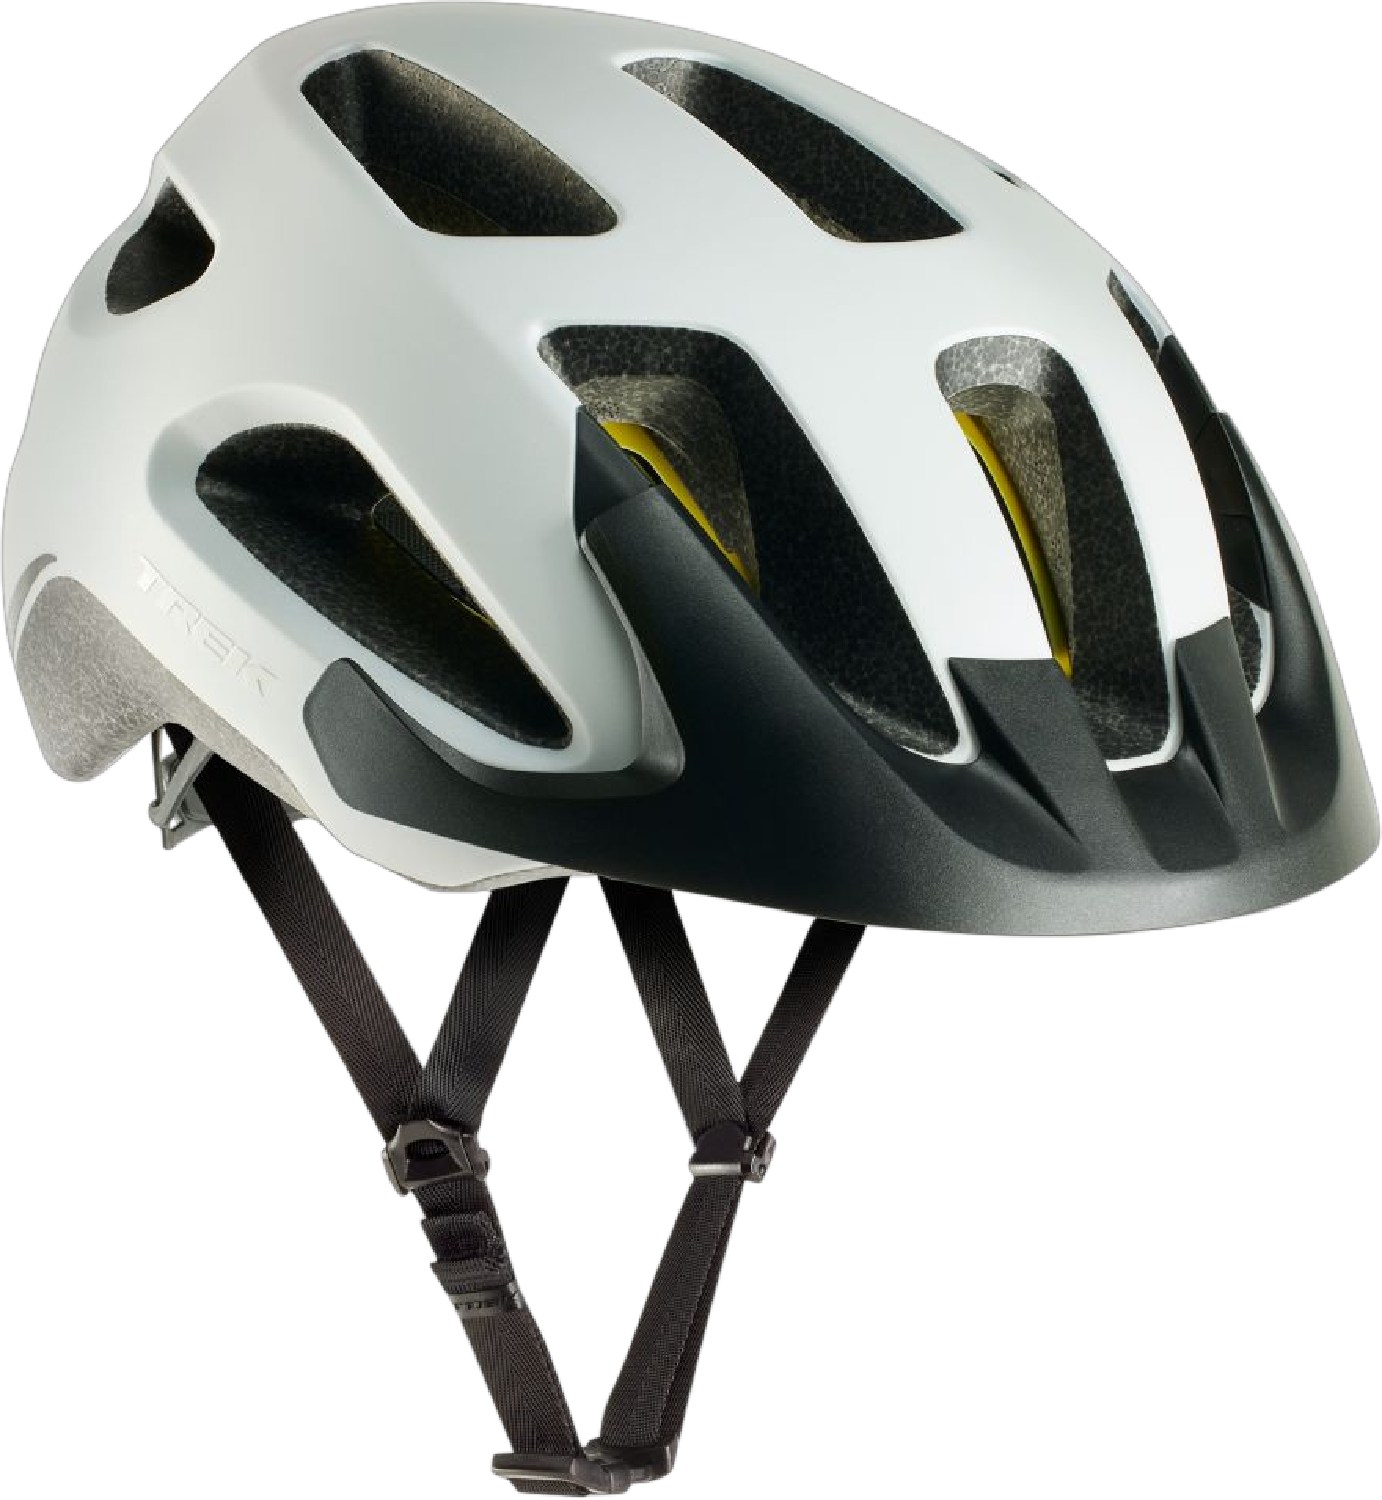 Велосипедный шлем Solstice Mips Trek, белый 1 шт велосипедный переключатель передач для trek 297656 322175 trek skye series elite 9 9 rocx spr livestrong fx trek 8500 mech dropout